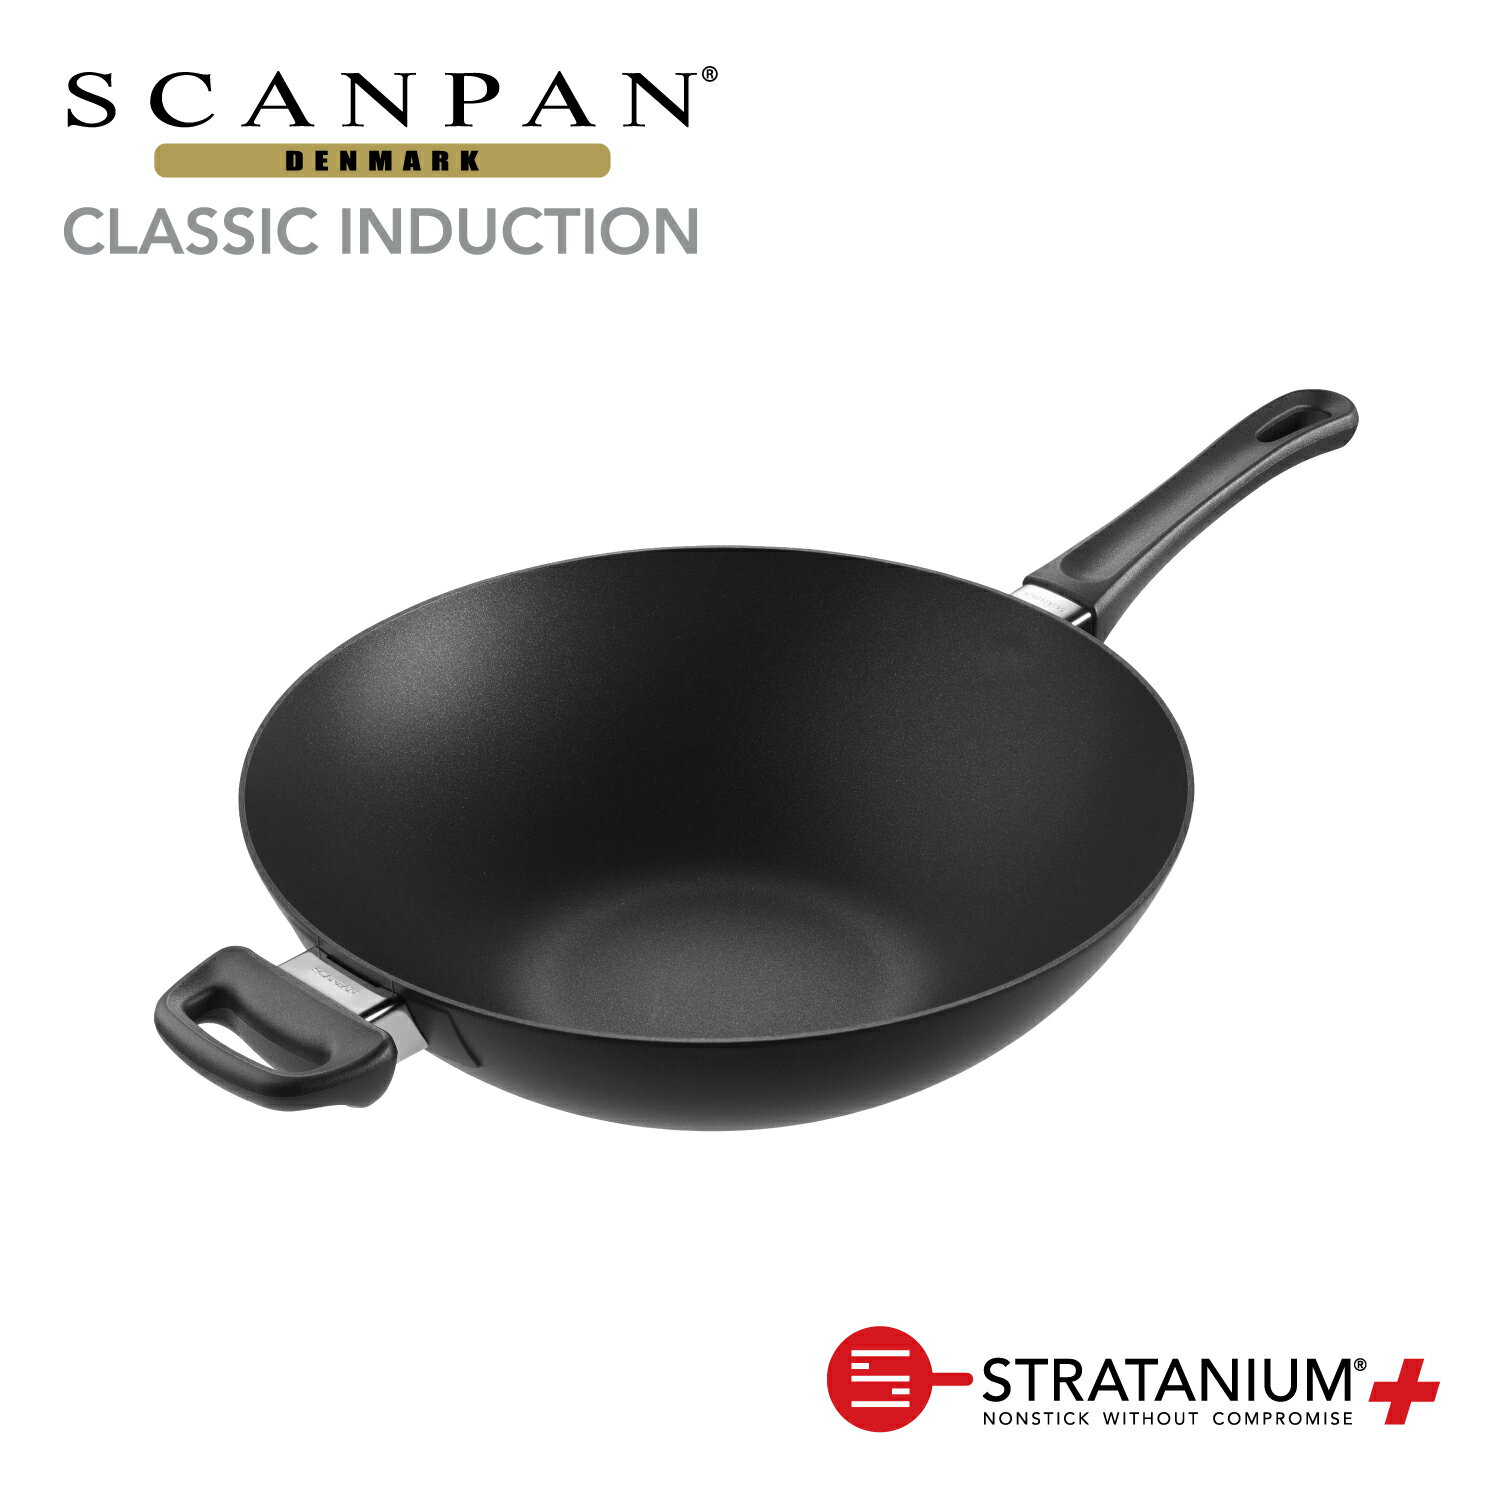 スキャンパン Classic インダクション IH対応 シリーズ 32cm ウォック 中華鍋 深型フライパン 環境に配慮 オーブン調理 ノンスティック 安全なフライパン フッ素加工 SCANPAN デンマーク STRATANIUM+